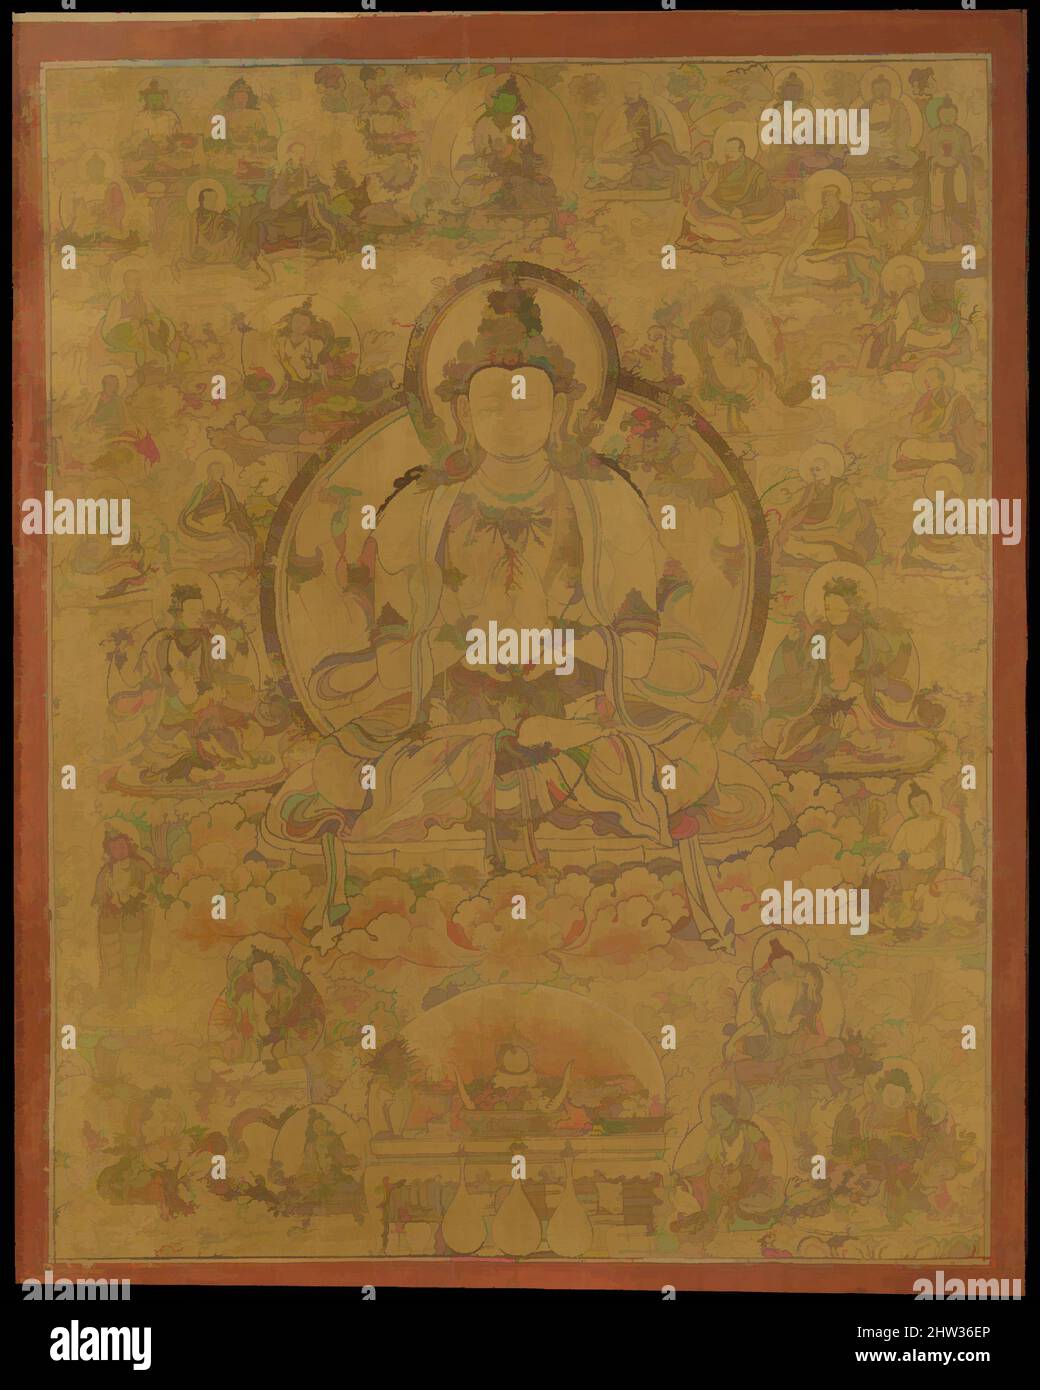 Arte ispirata da Sadaksari-Lokeshvara circondata da manifestazioni e monaci, fine 15th secolo, Tibet, oro, inchiostro, E colore su tessuto, immagine: 40 3/8 x 31 1/4 pollici (102,6 x 79,4 cm), dipinti, questo dipinto rappresenta la “forma a sei sillabe” di Avalokiteshvara, evocando il mantra om, opere classiche modernizzate da Artotop con un tuffo di modernità. Forme, colore e valore, impatto visivo accattivante sulle emozioni artistiche attraverso la libertà delle opere d'arte in modo contemporaneo. Un messaggio senza tempo che persegue una nuova direzione selvaggiamente creativa. Artisti che si rivolgono al supporto digitale e creano l'NFT Artotop Foto Stock